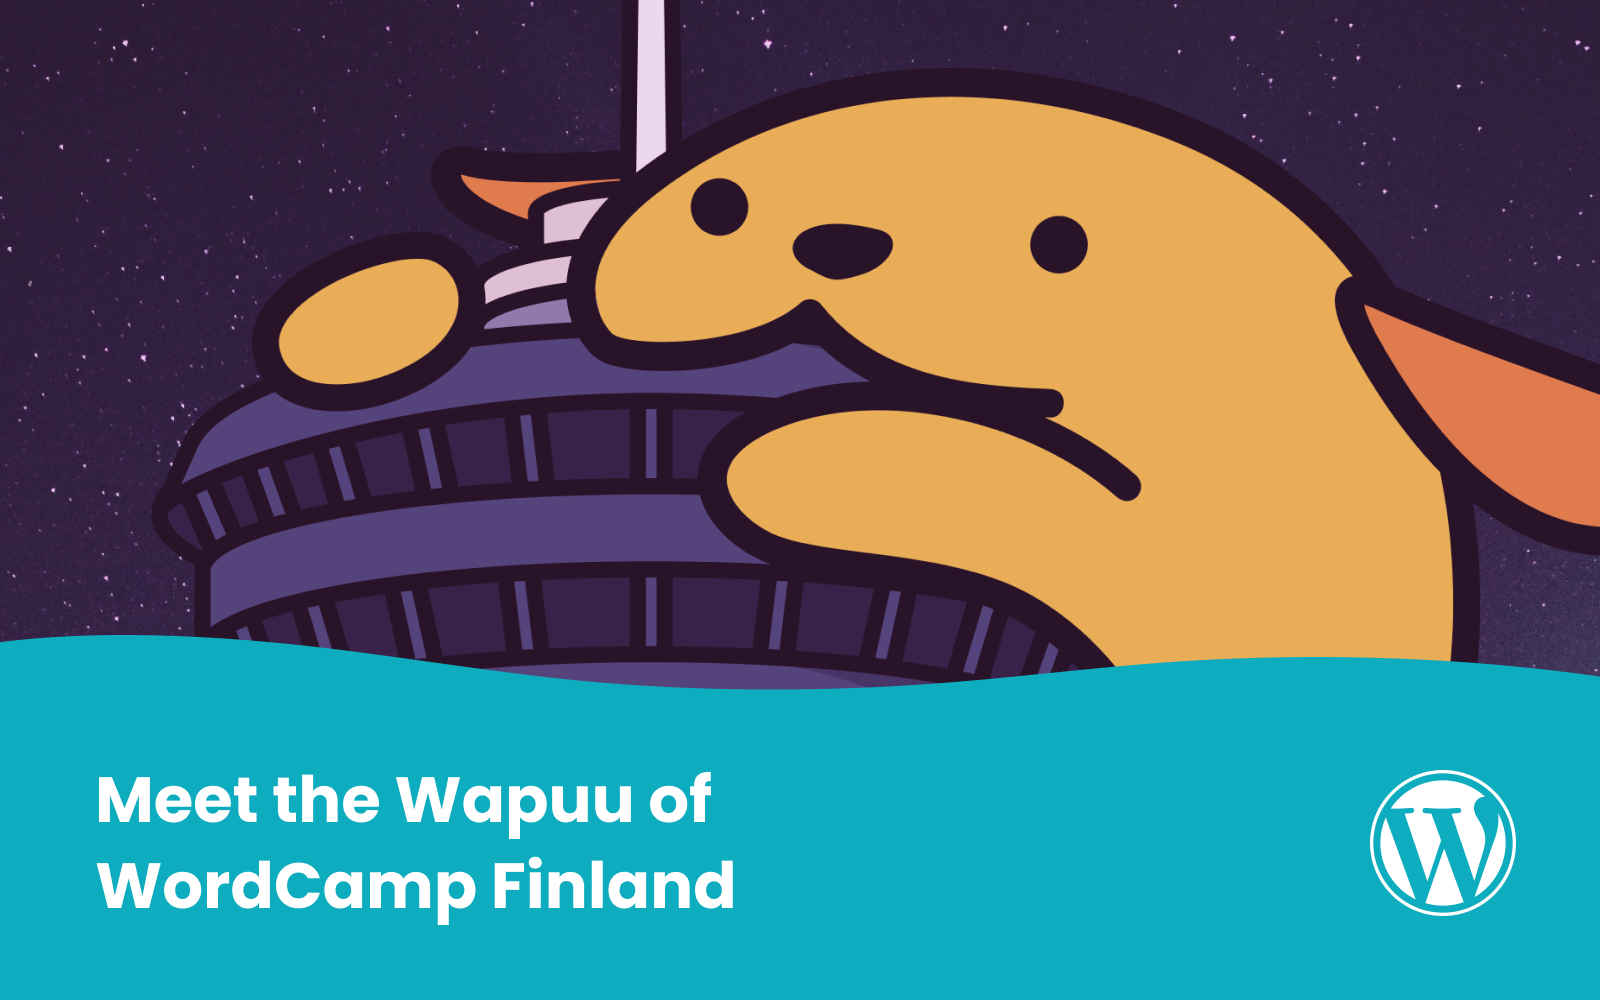 Meet the Wapuu of WordCamp Finland